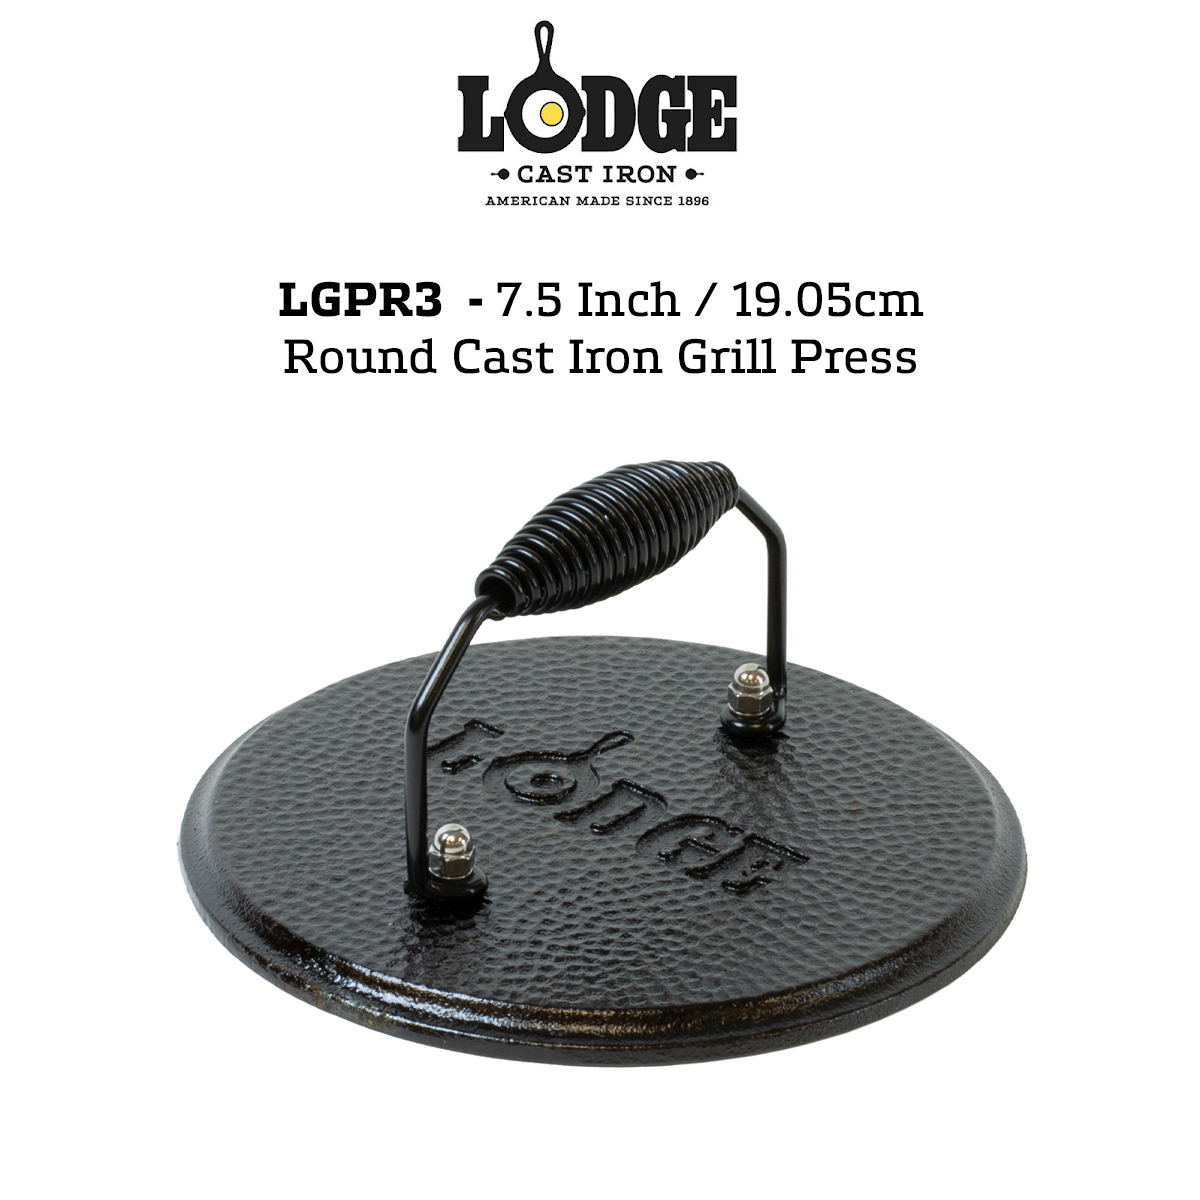 Lodge LGPR3 Cast Iron Round Grill Press